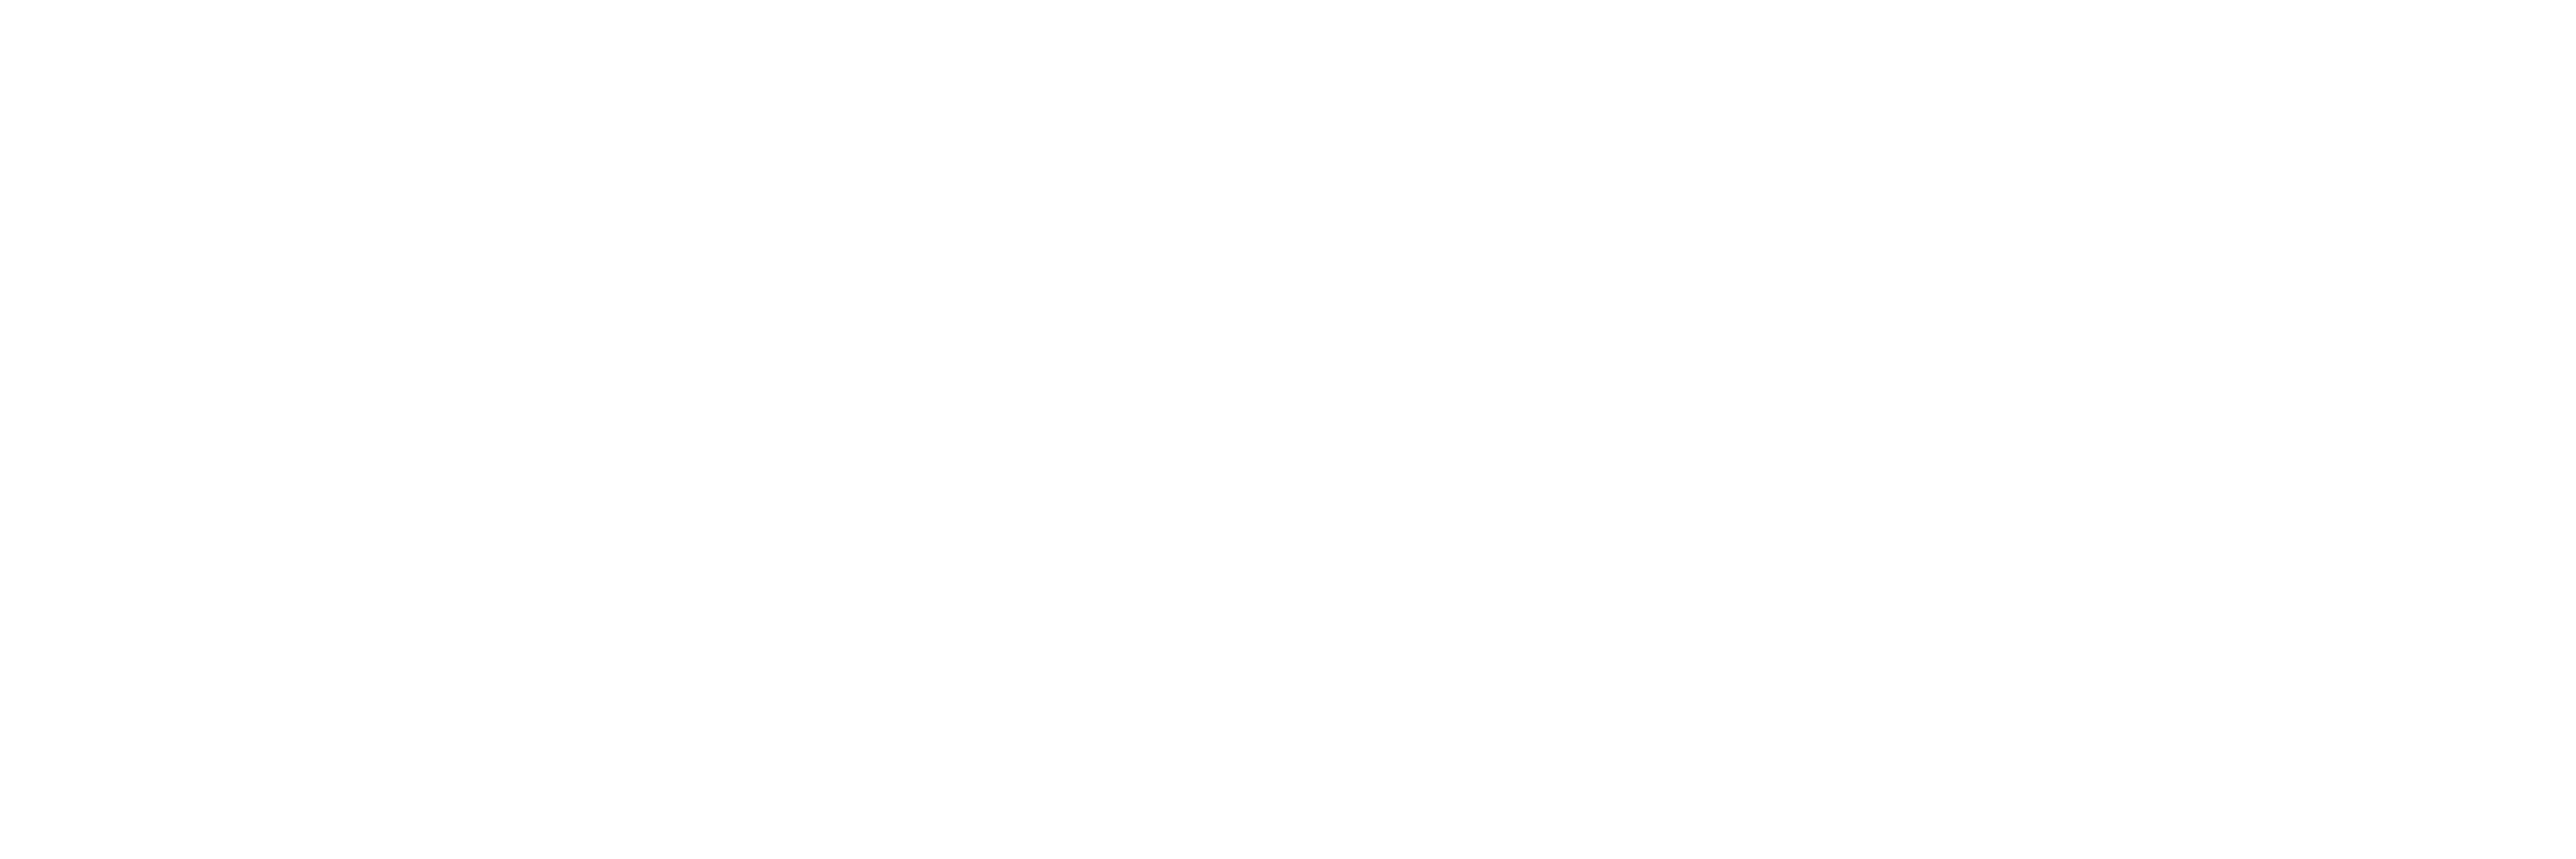 Logo von Xplora in Weiss